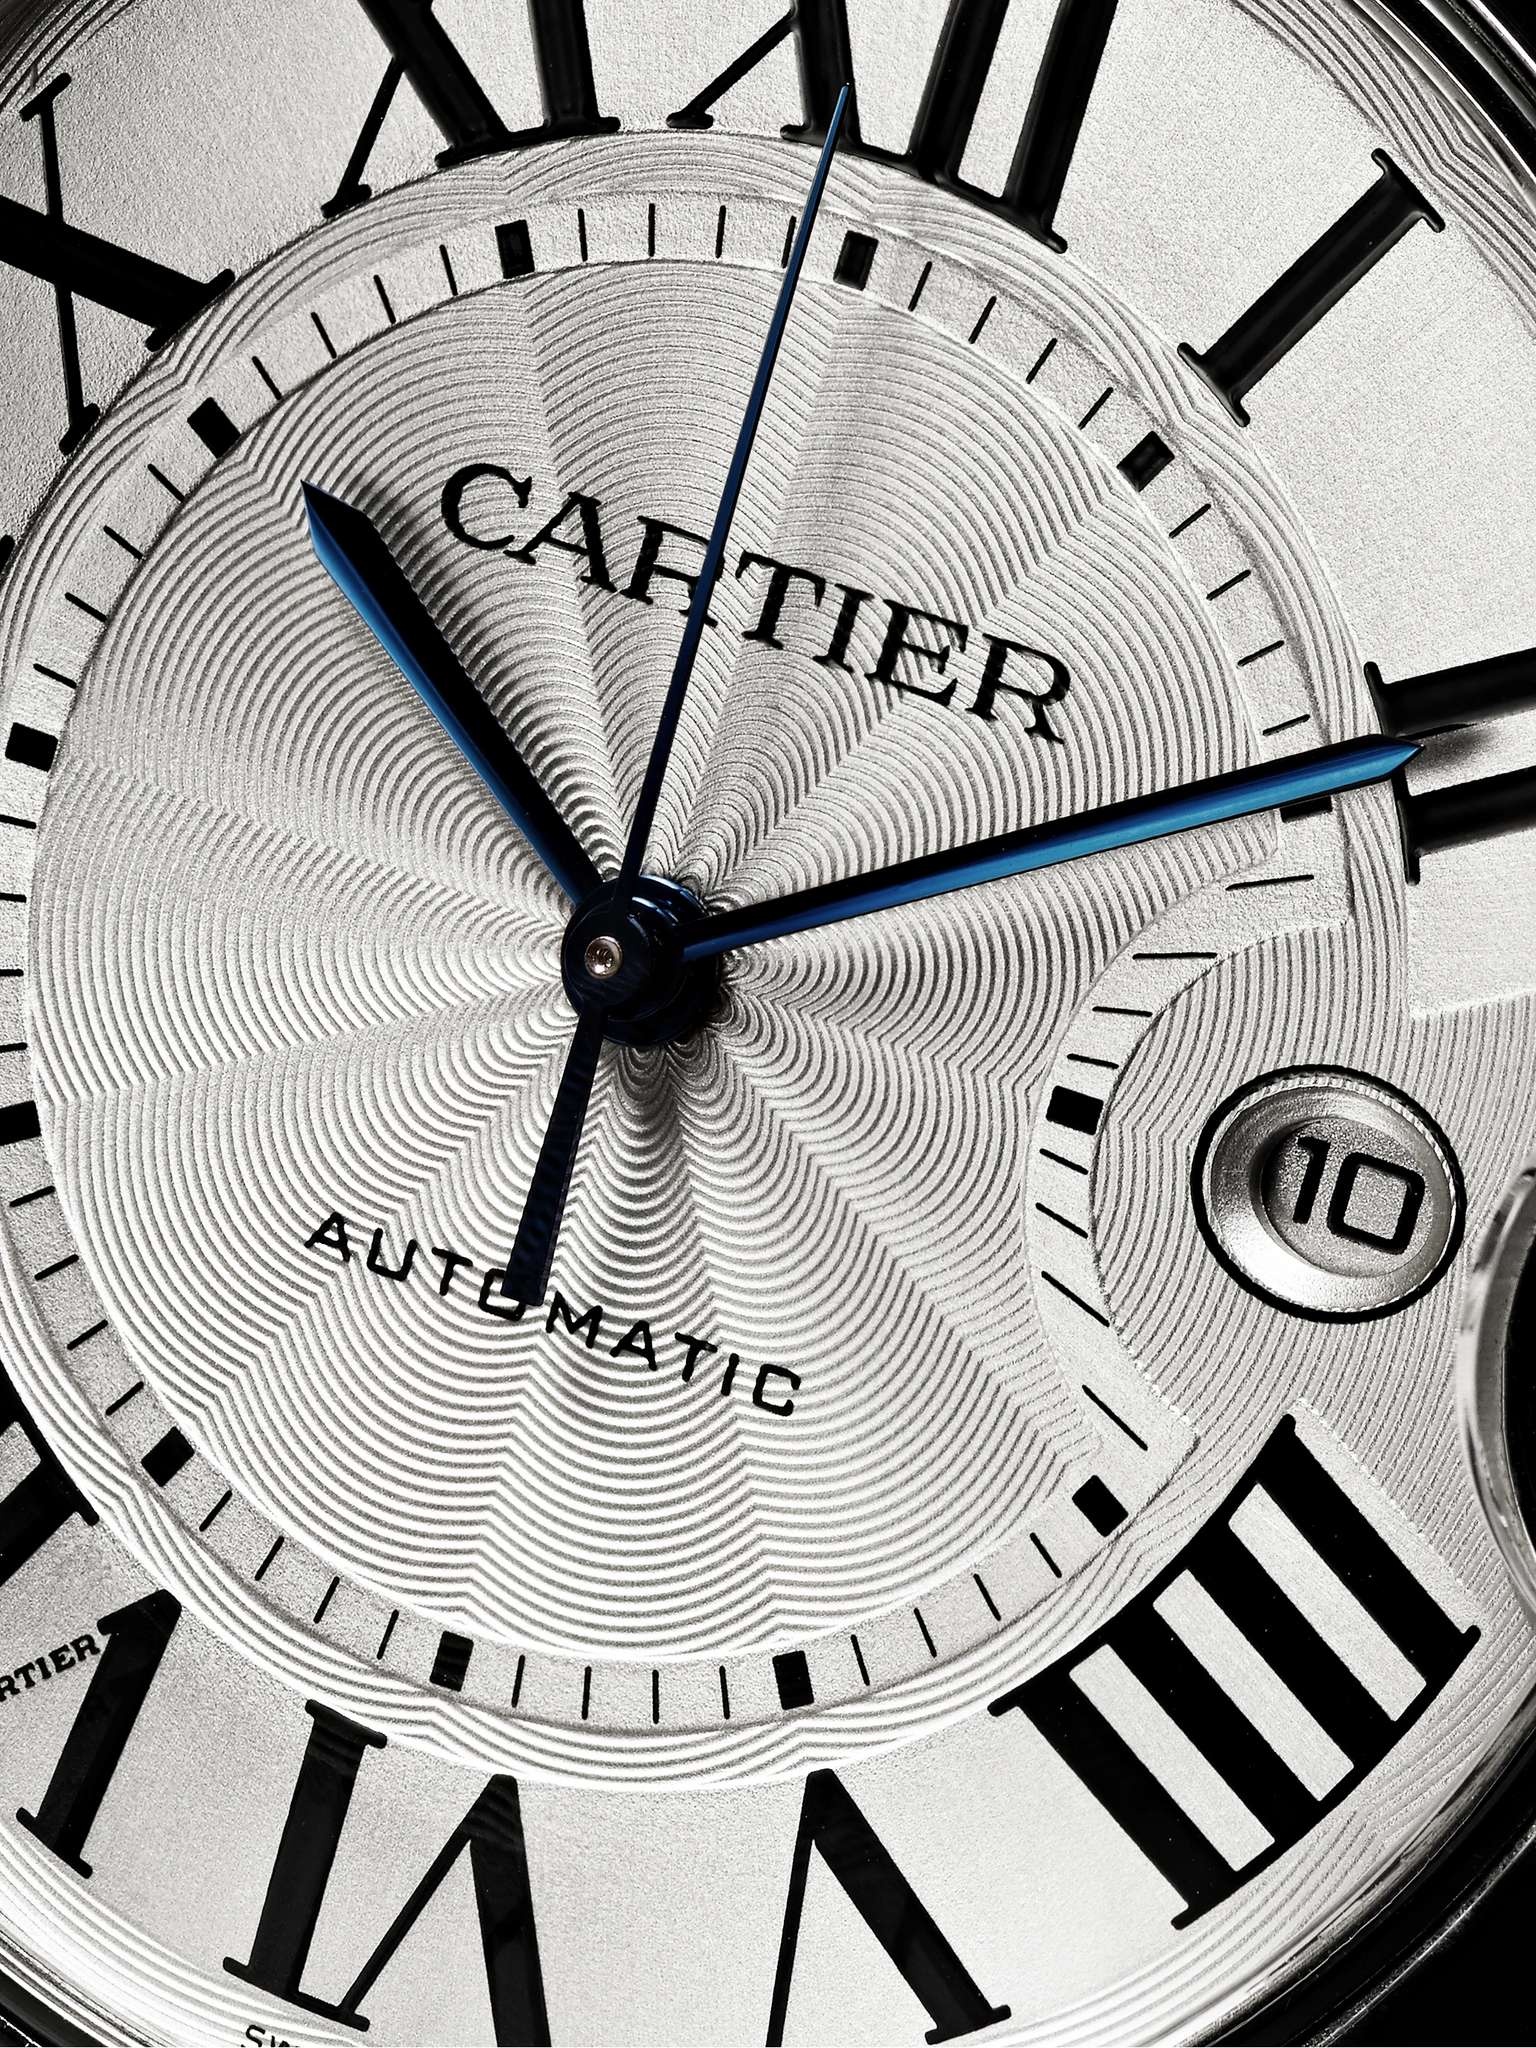 Ballon Bleu de Cartier Automatic 42mm Stainless Steel Watch, Ref. No. CRW69012Z4 - 3